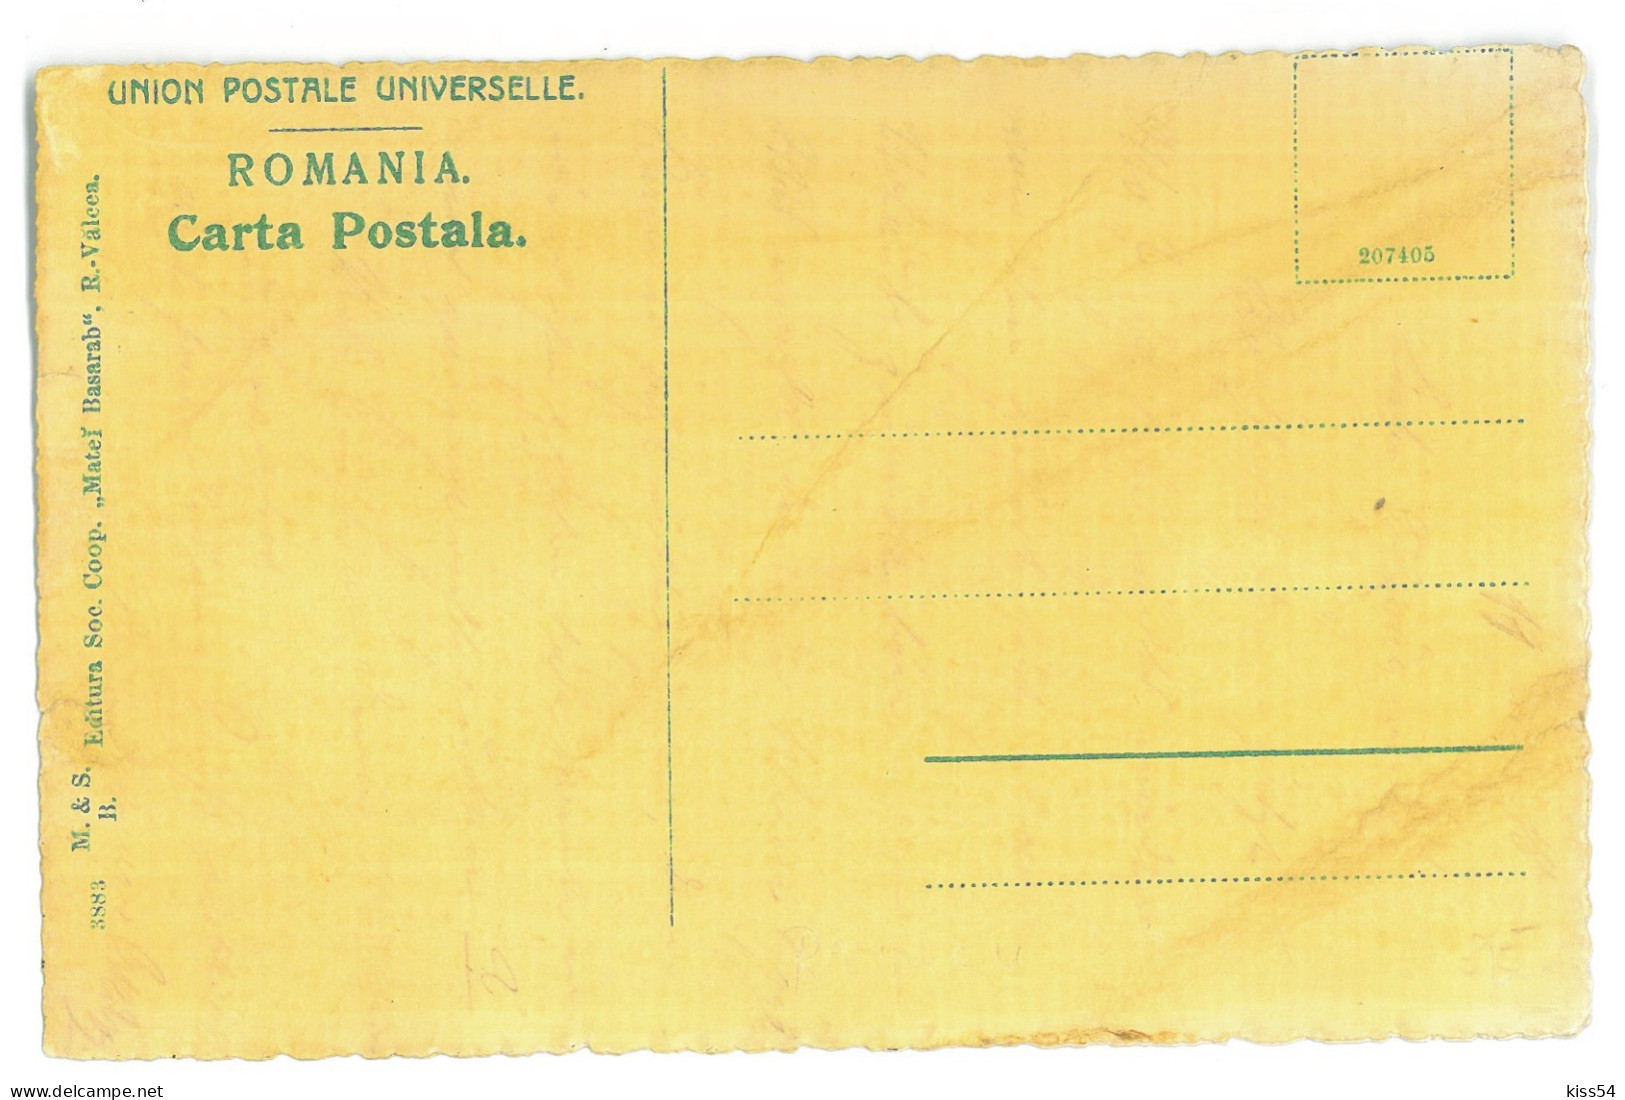 RO 79 - 22579 Rm. VALCEA, Lahovari High School, Romania - Old Postcard - Unused - Rumänien